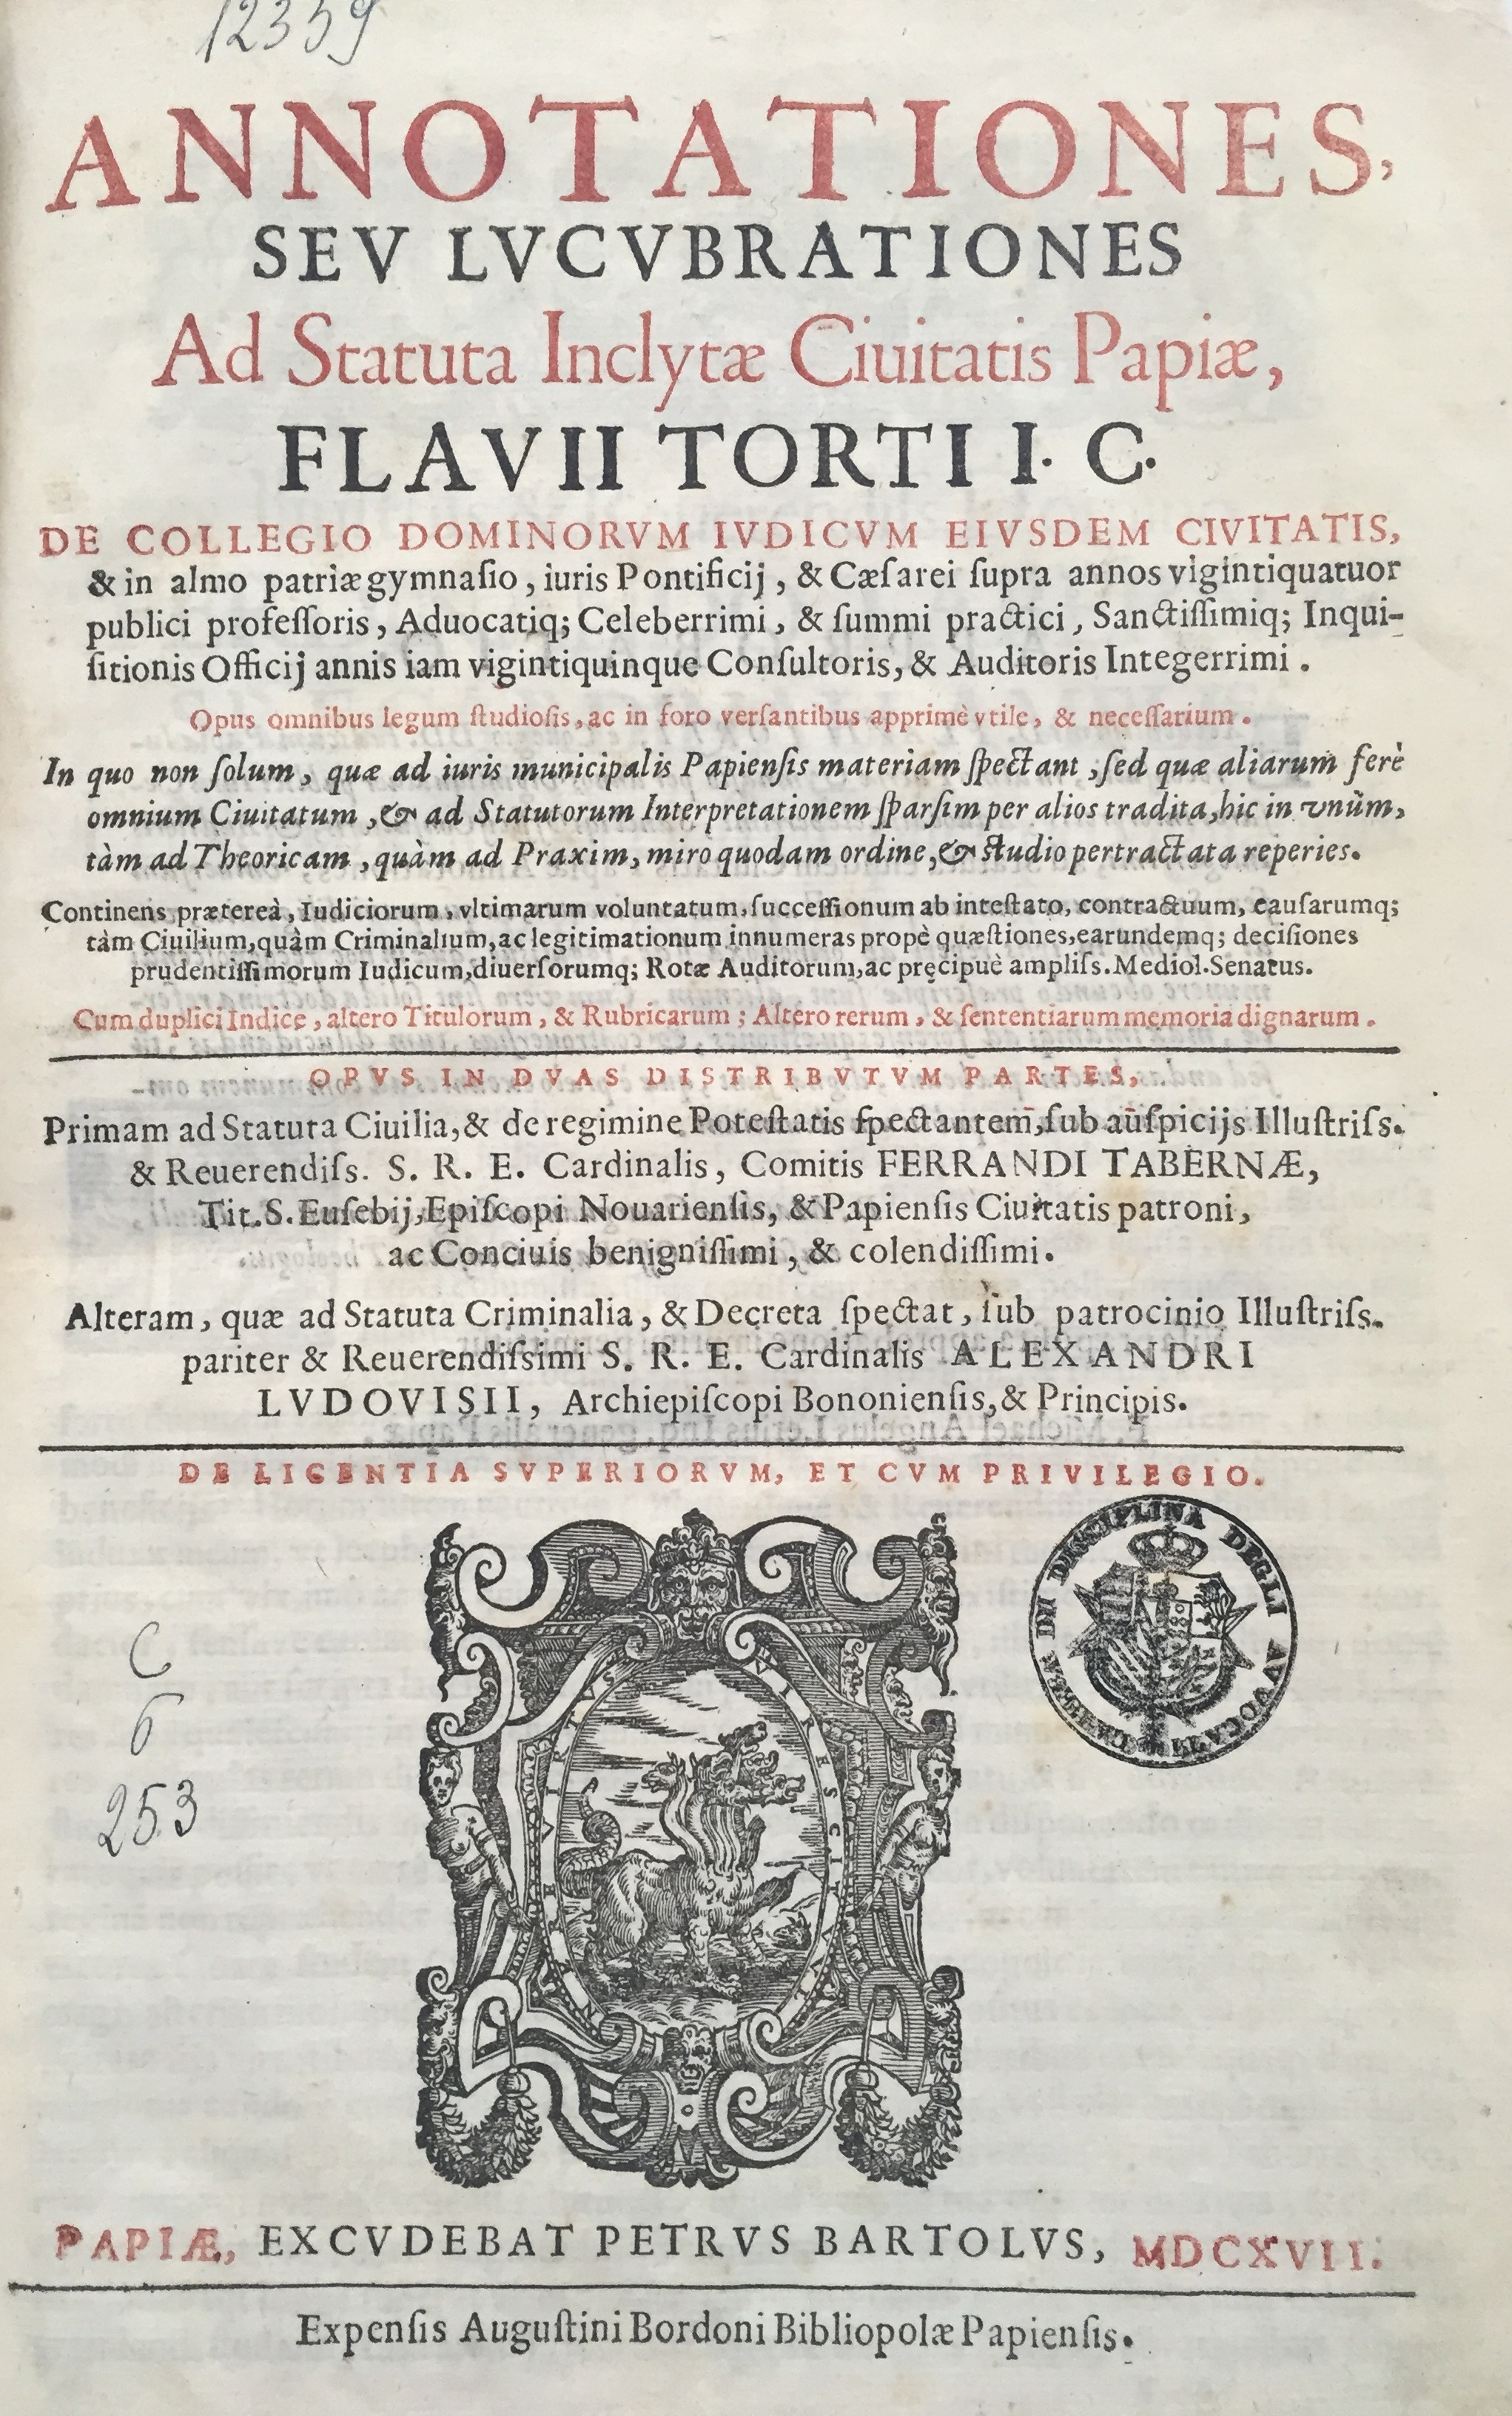 Annotationes, seu Lucubrationes ad statuta inclytae civitatis Papiae